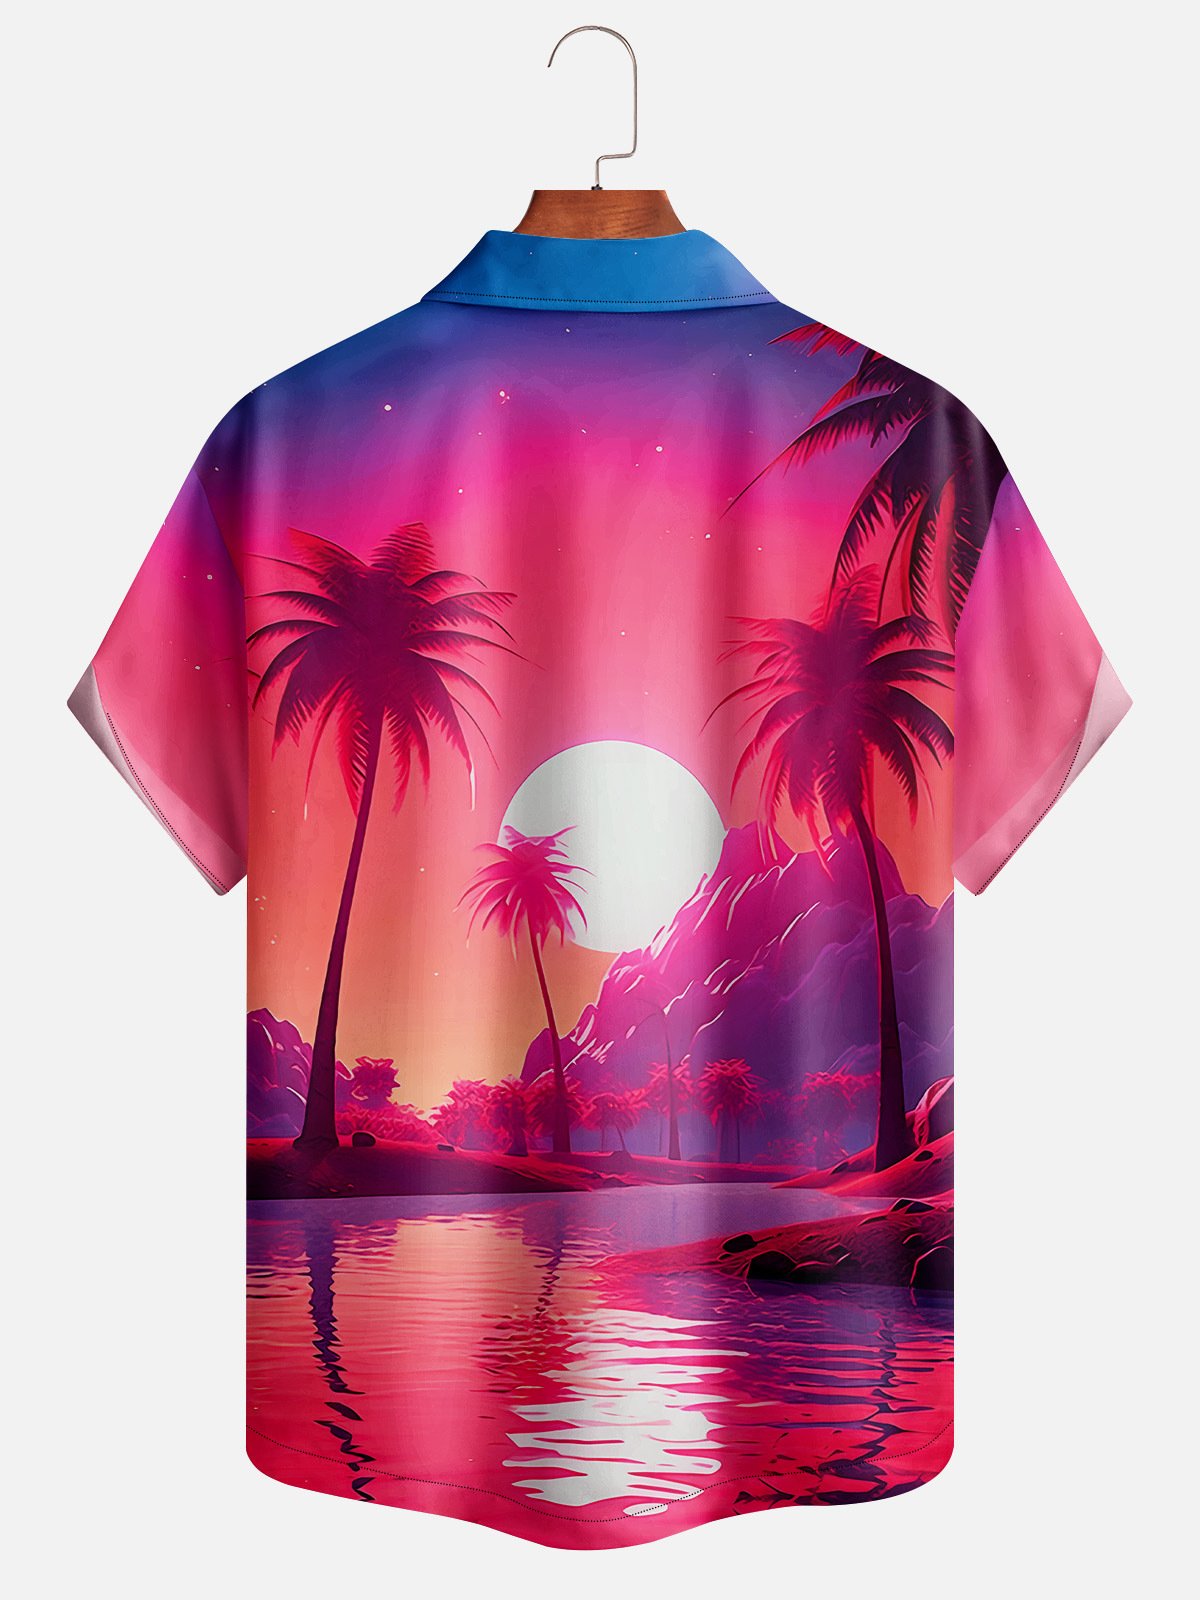 Hardaddy Coconut Tree Sunset Landscape Short Sleeve Aloha Shirt